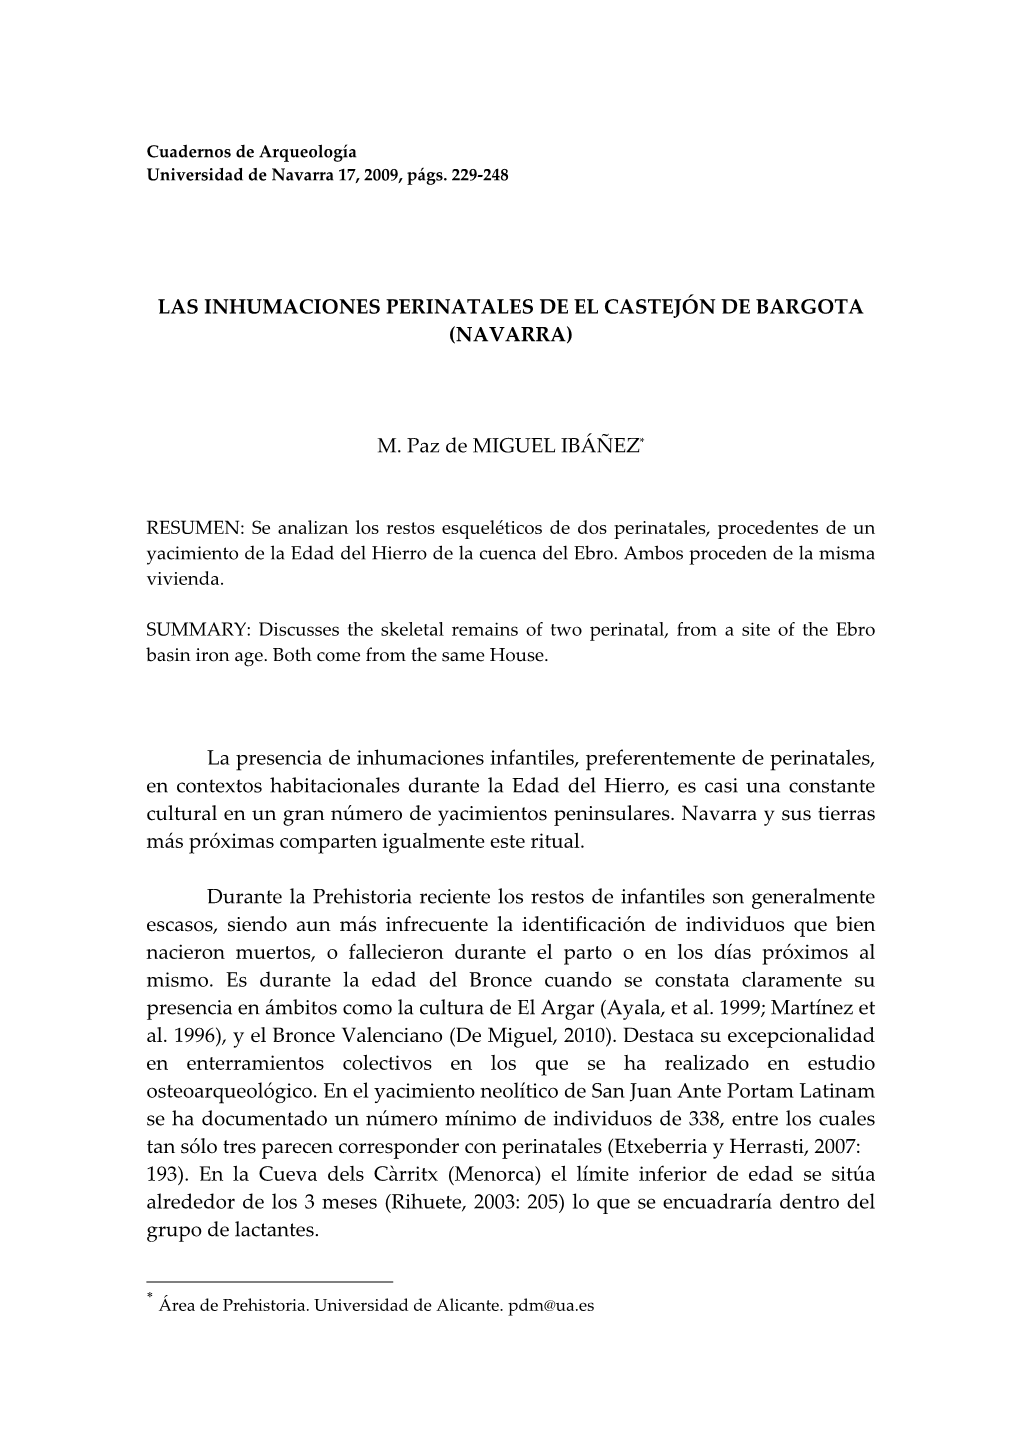 Las Inhumaciones Perinatales De El Castejón De Bargota (Navarra)